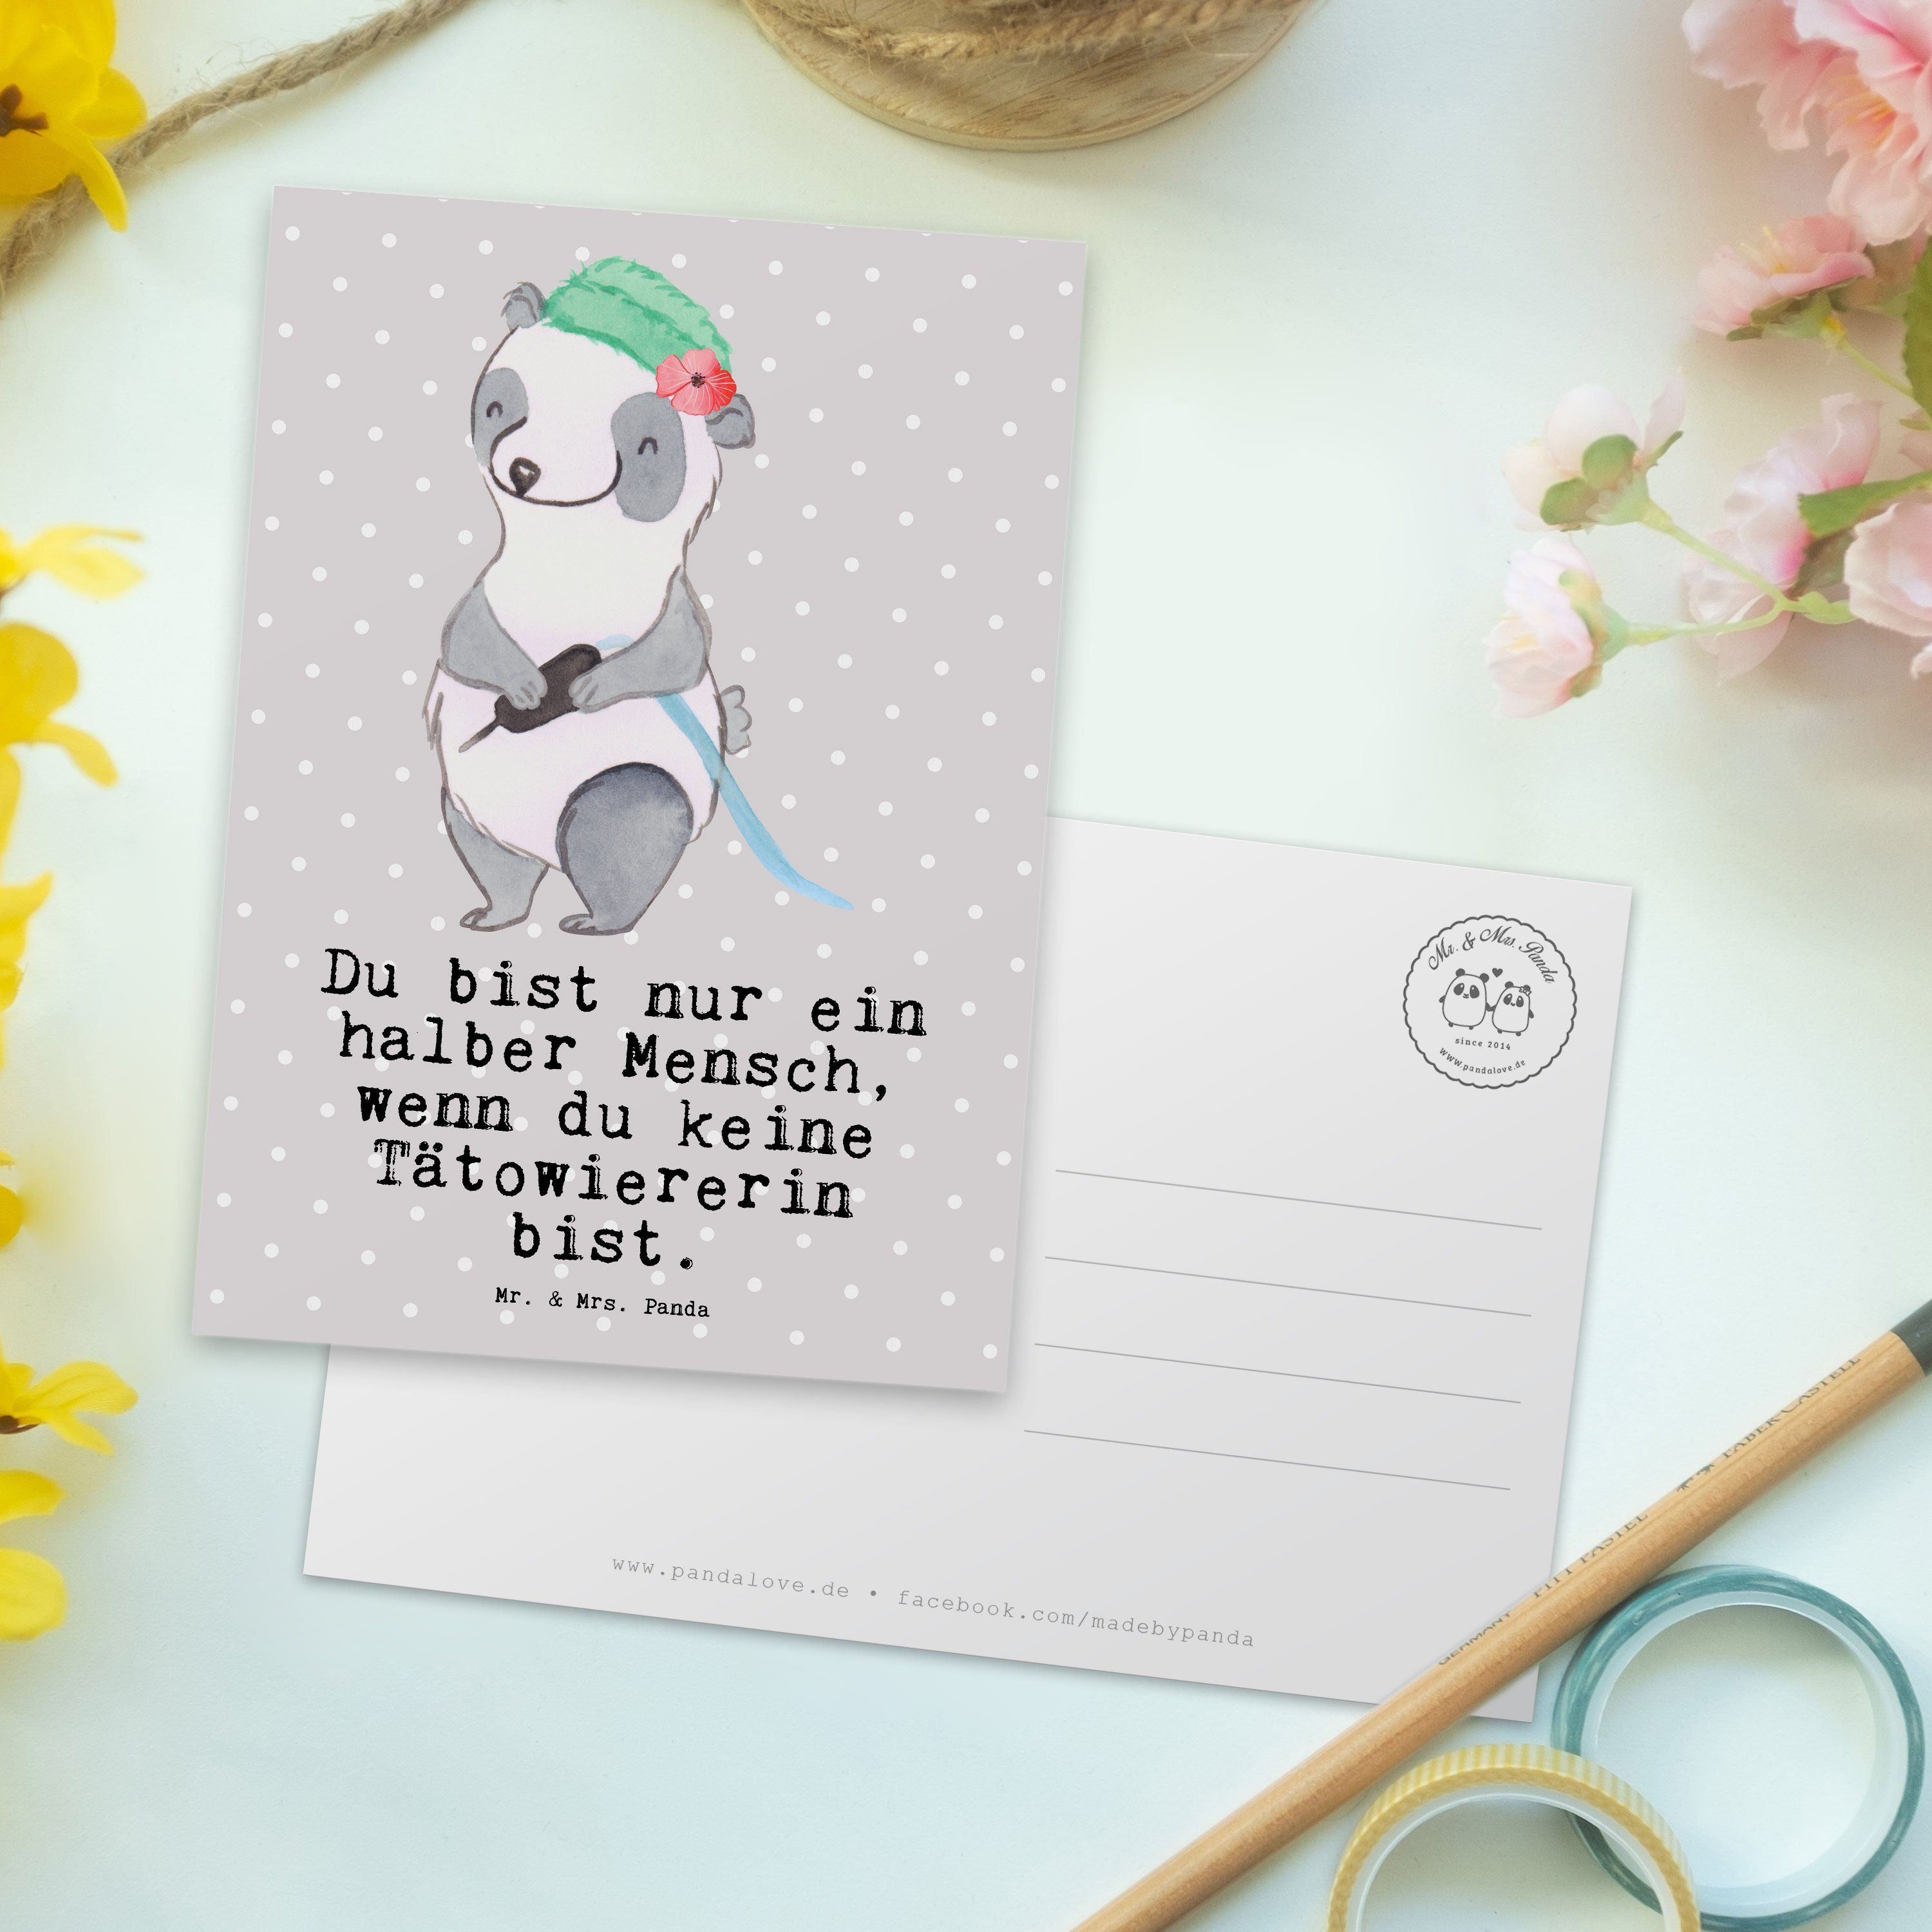 Grau Pastell Mitarbeiter, Panda & Herz Tätowiererin Geschen Geschenk, Mrs. - Mr. - Postkarte mit